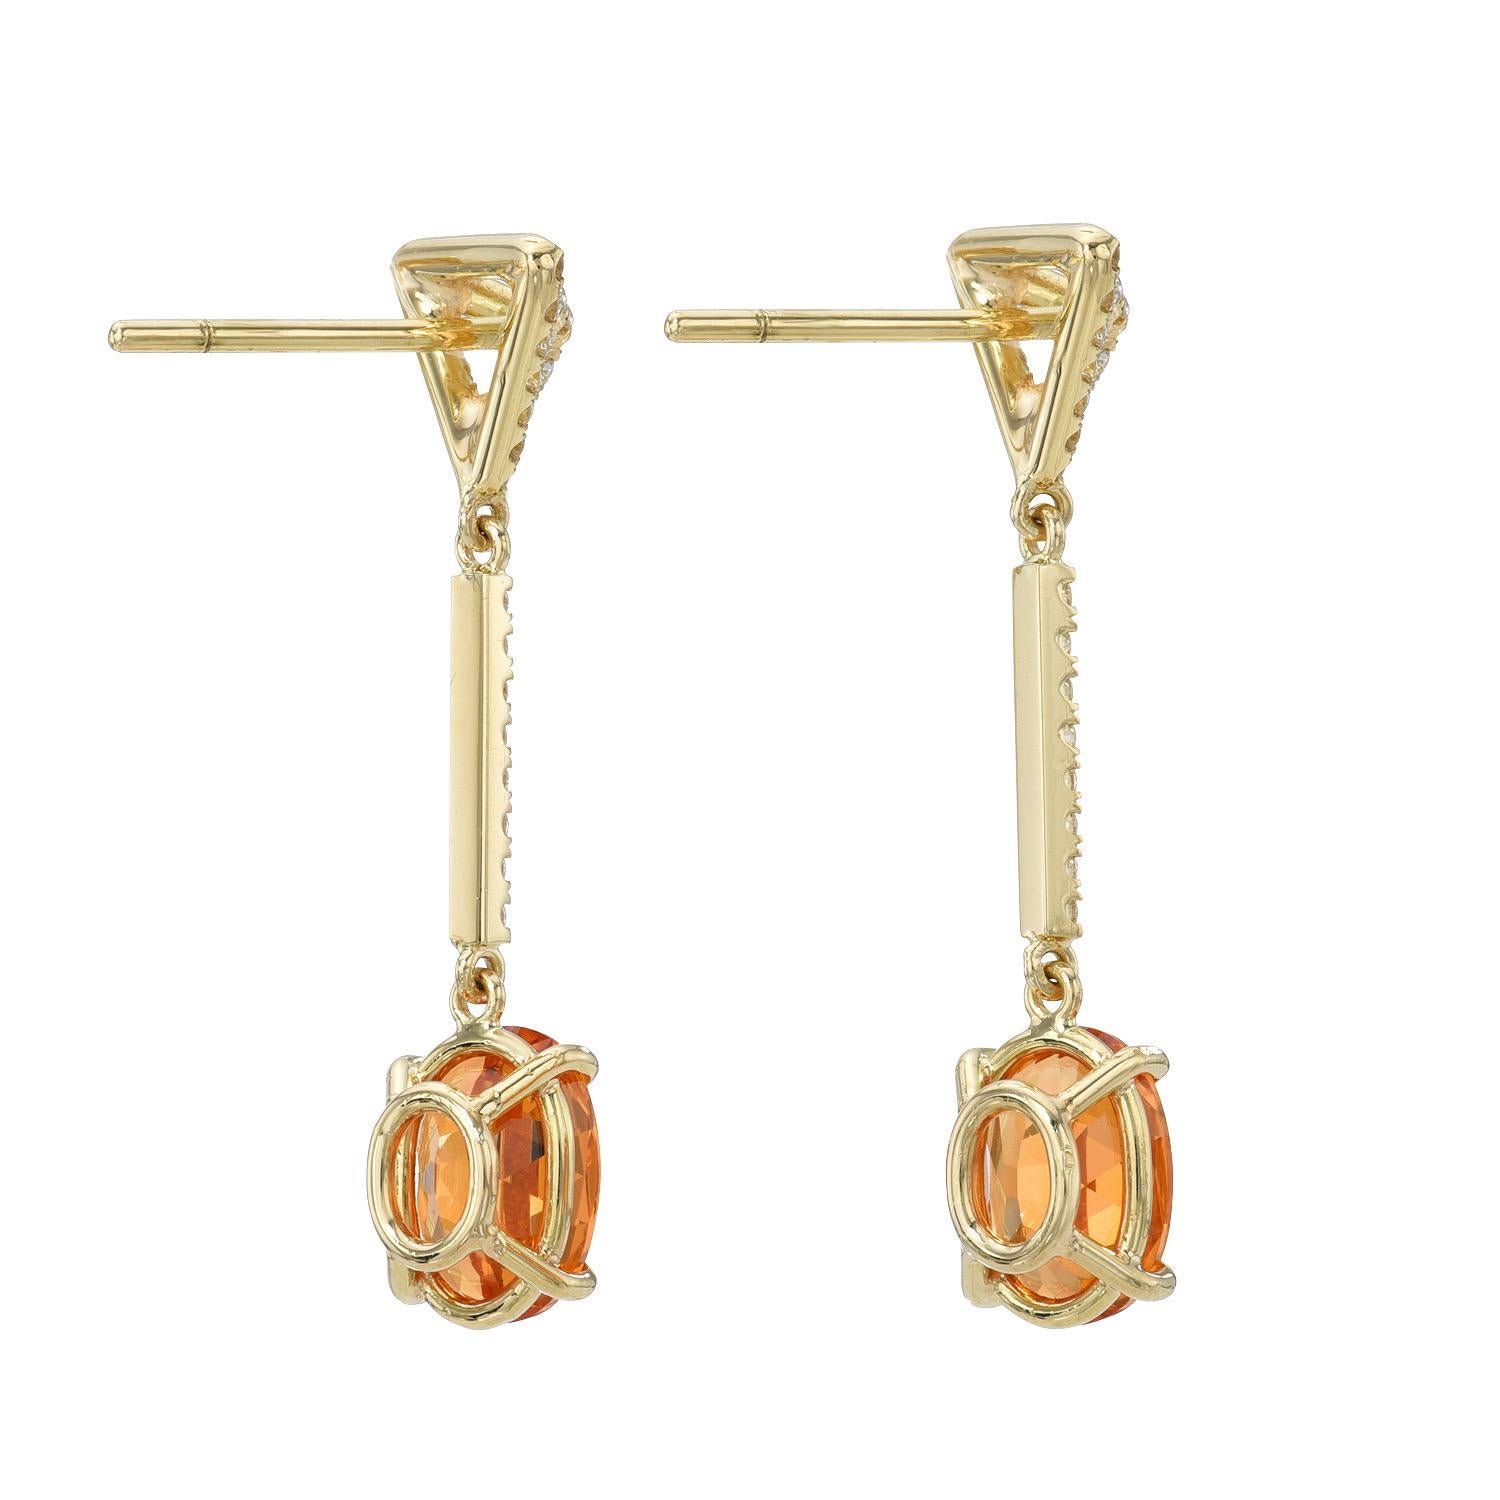 Oval Cut Mandarin Garnet Earrings 3.70 Carat Oval For Sale